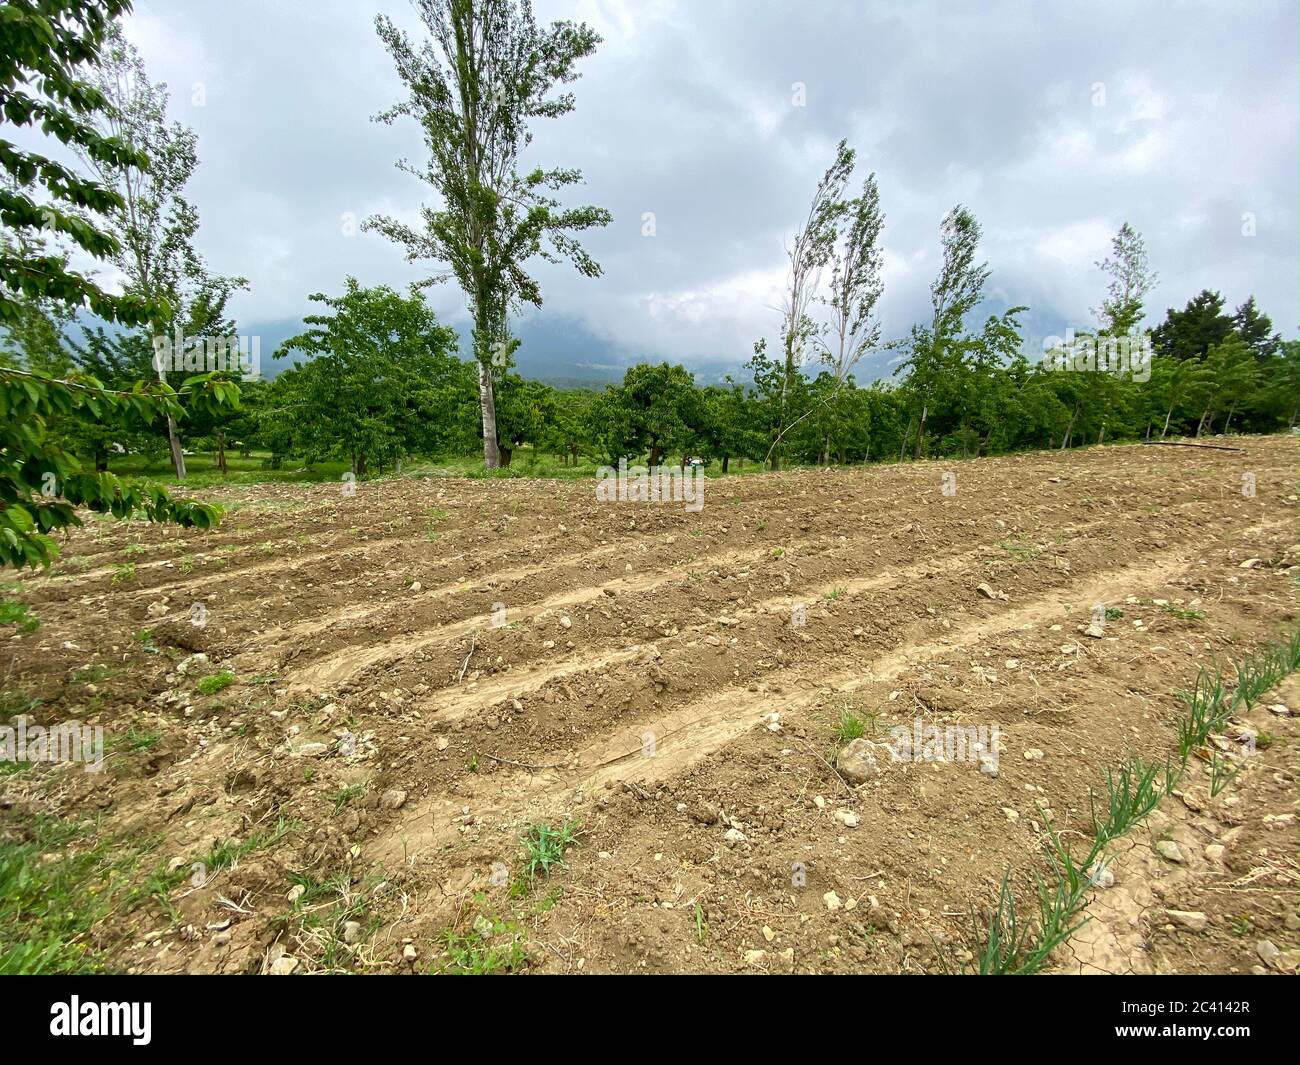 Nahaufnahme von Reihen von gesät Zwiebeln Pflanzen wachsen in den Lehmboden eines Gärtners. Feld mit grünen Zwiebeln Stockfoto